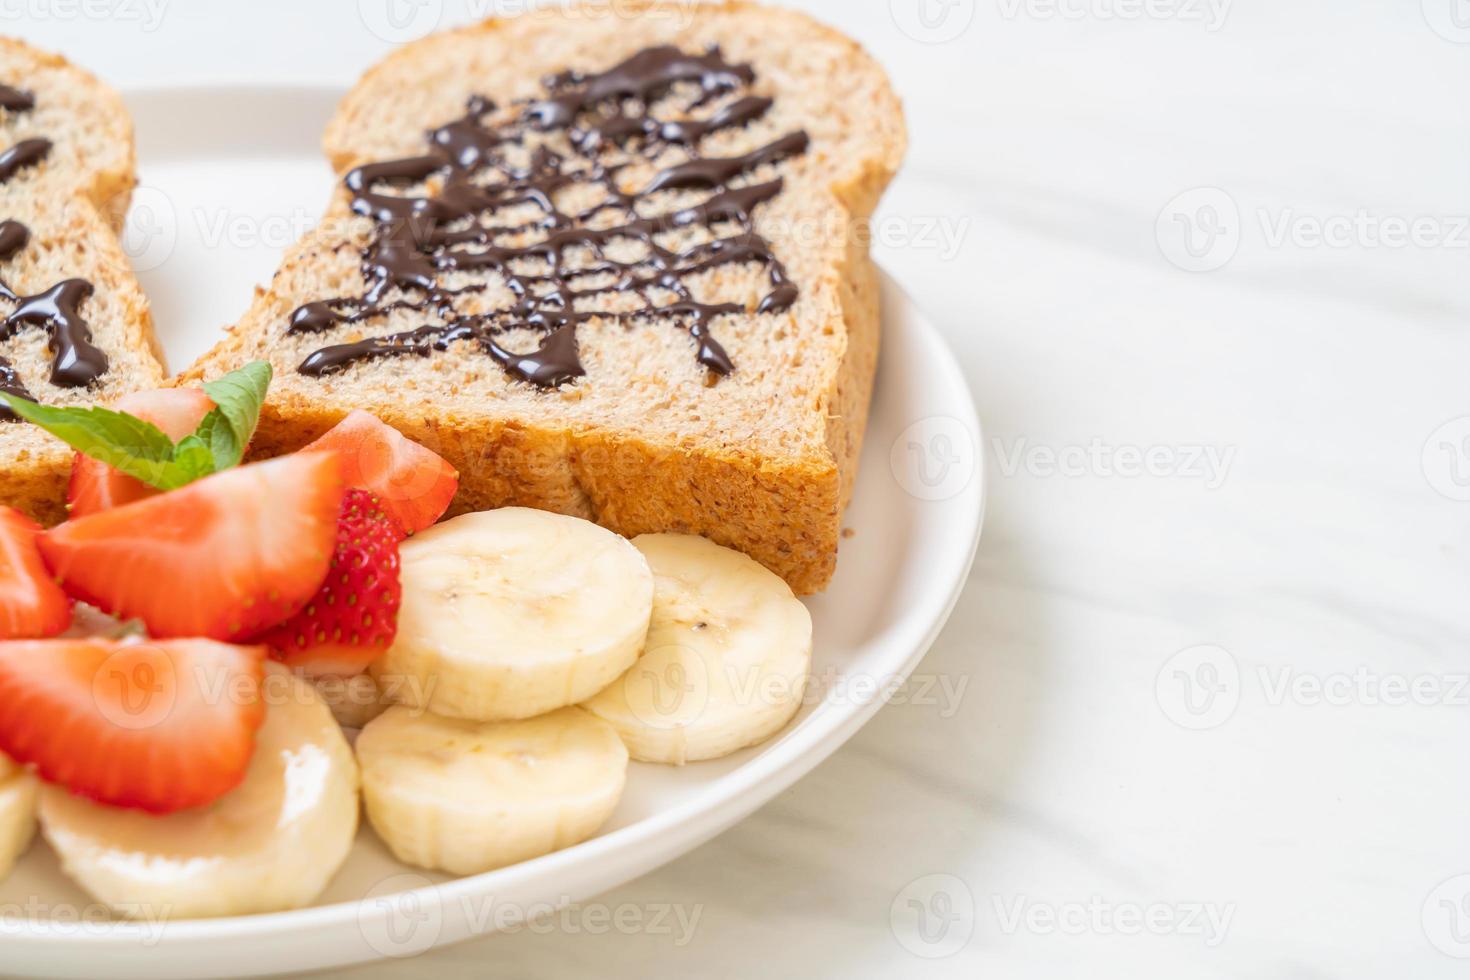 pane integrale tostato con banana fresca, fragola e cioccolato per colazione foto